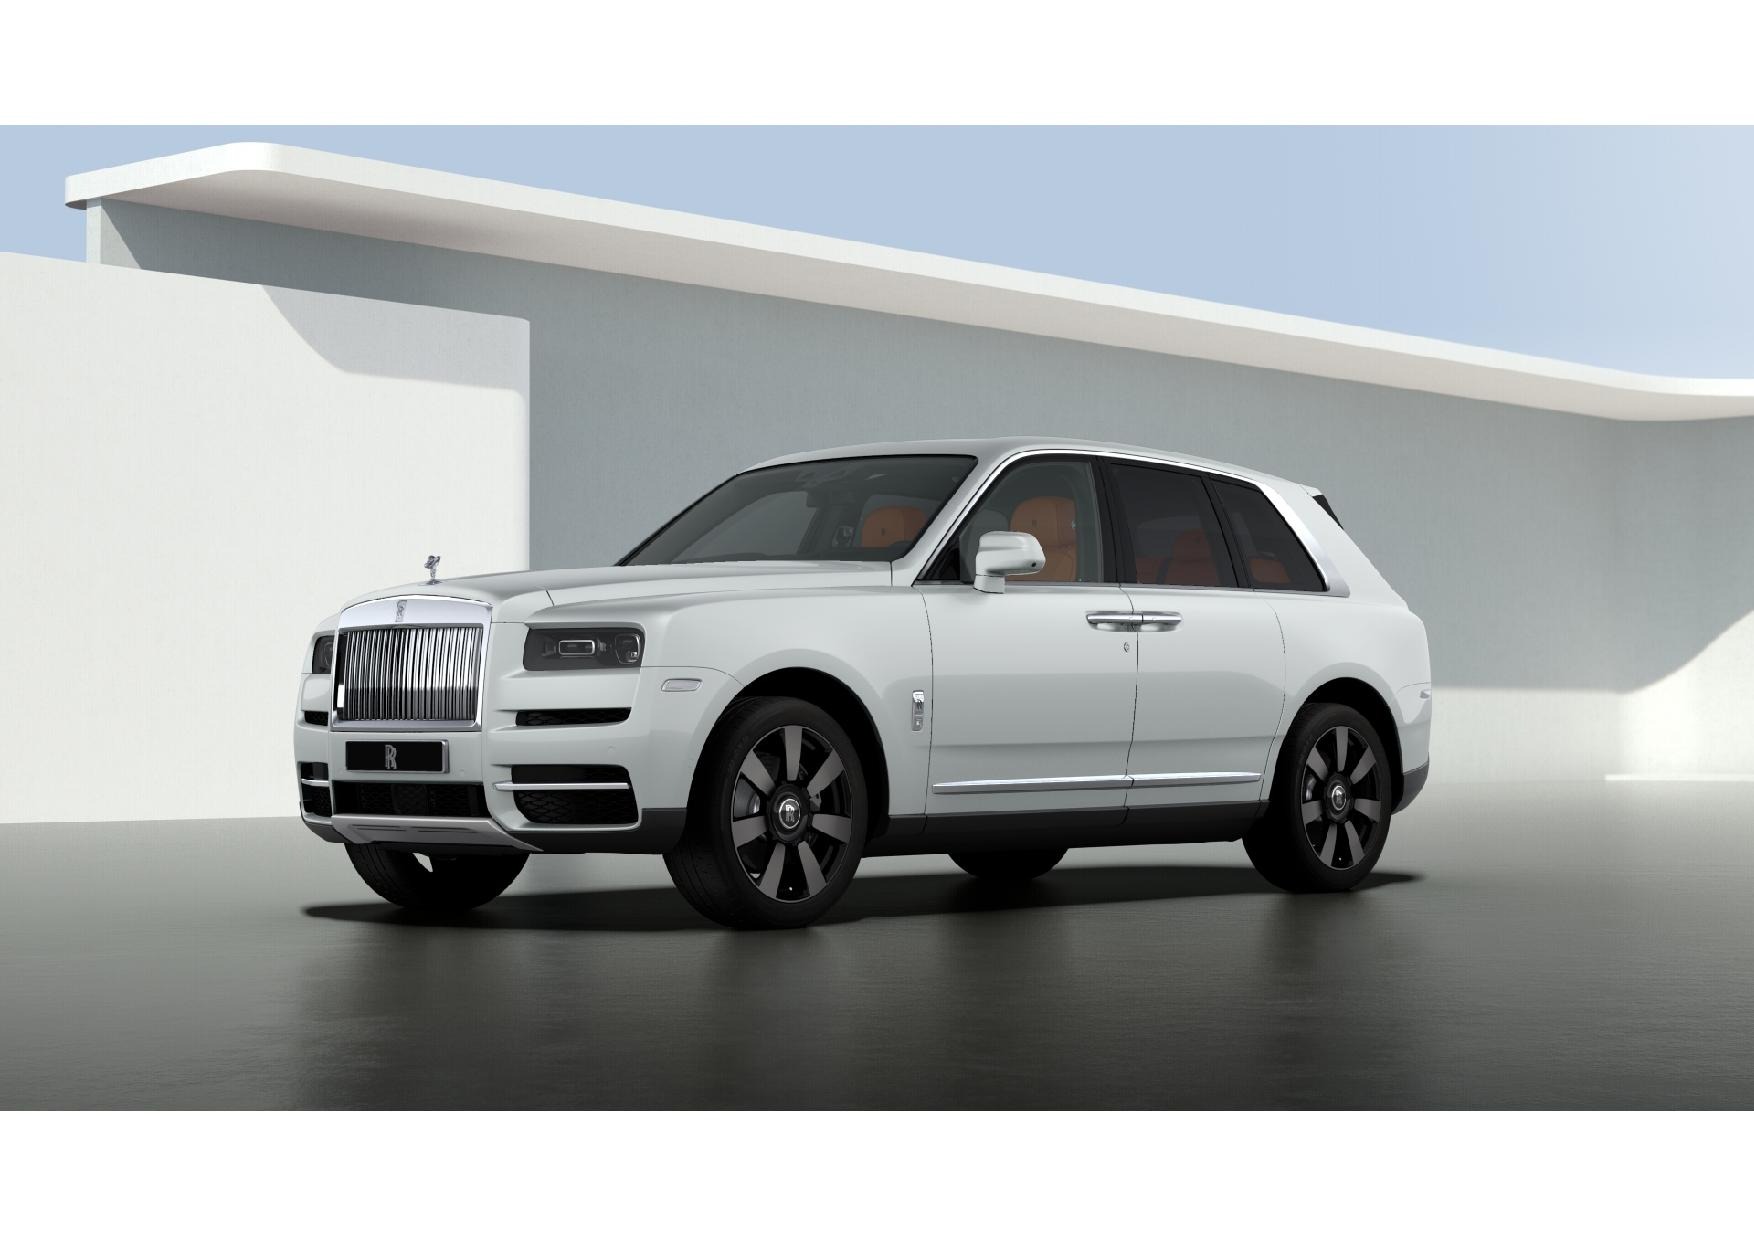 2022 Rolls-Royce Cullinan SUV Digital Showroom